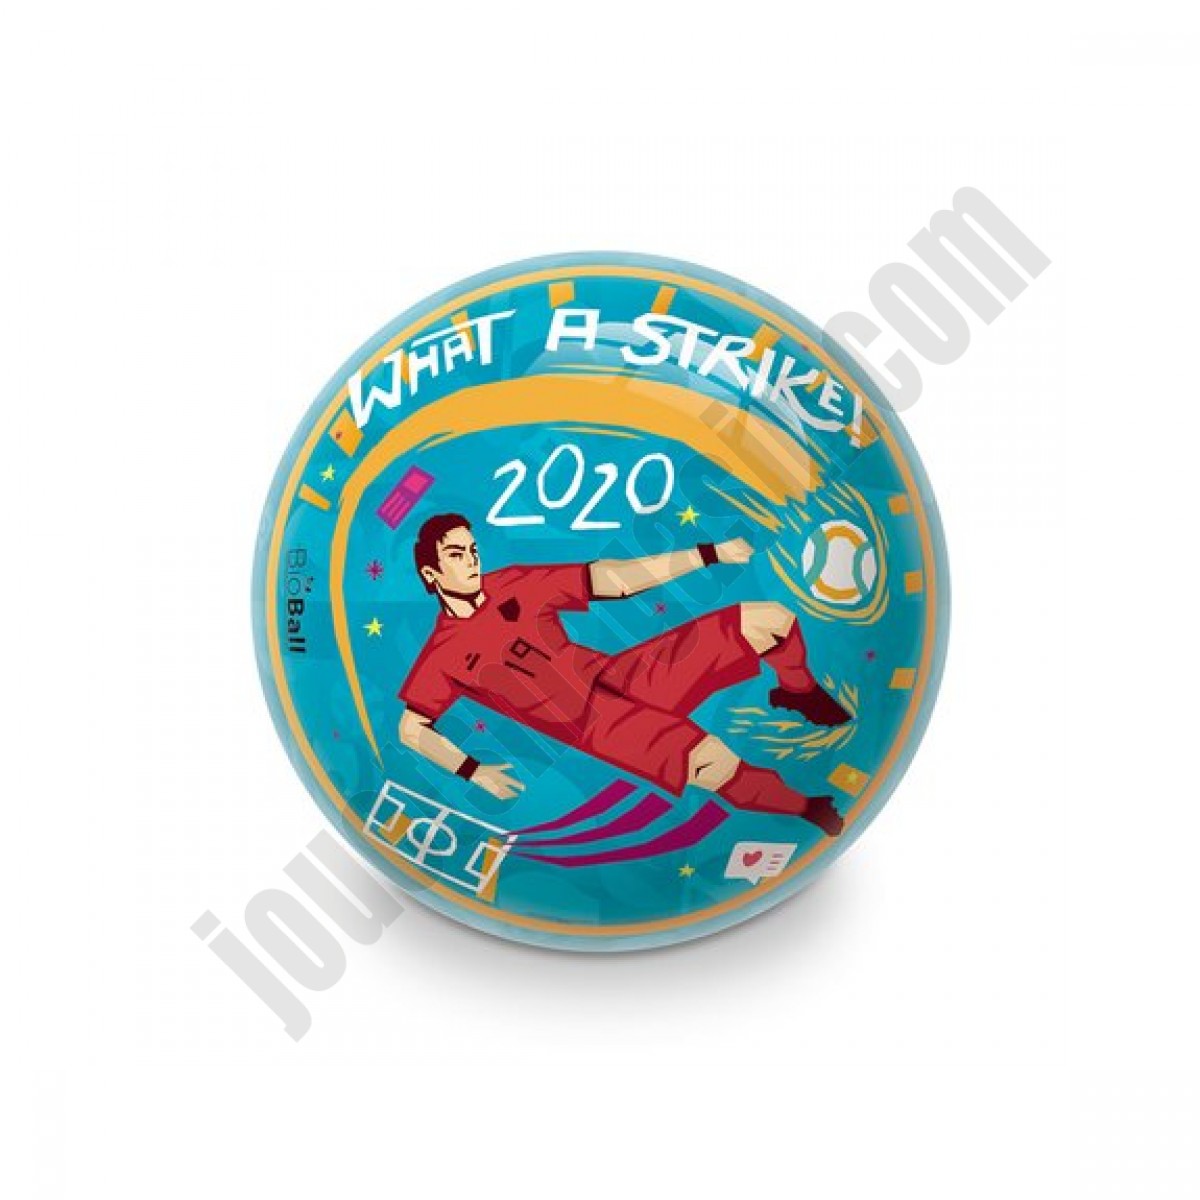 Ballon de football UEFA Euro 2020 En promotion - Ballon de football UEFA Euro 2020 En promotion